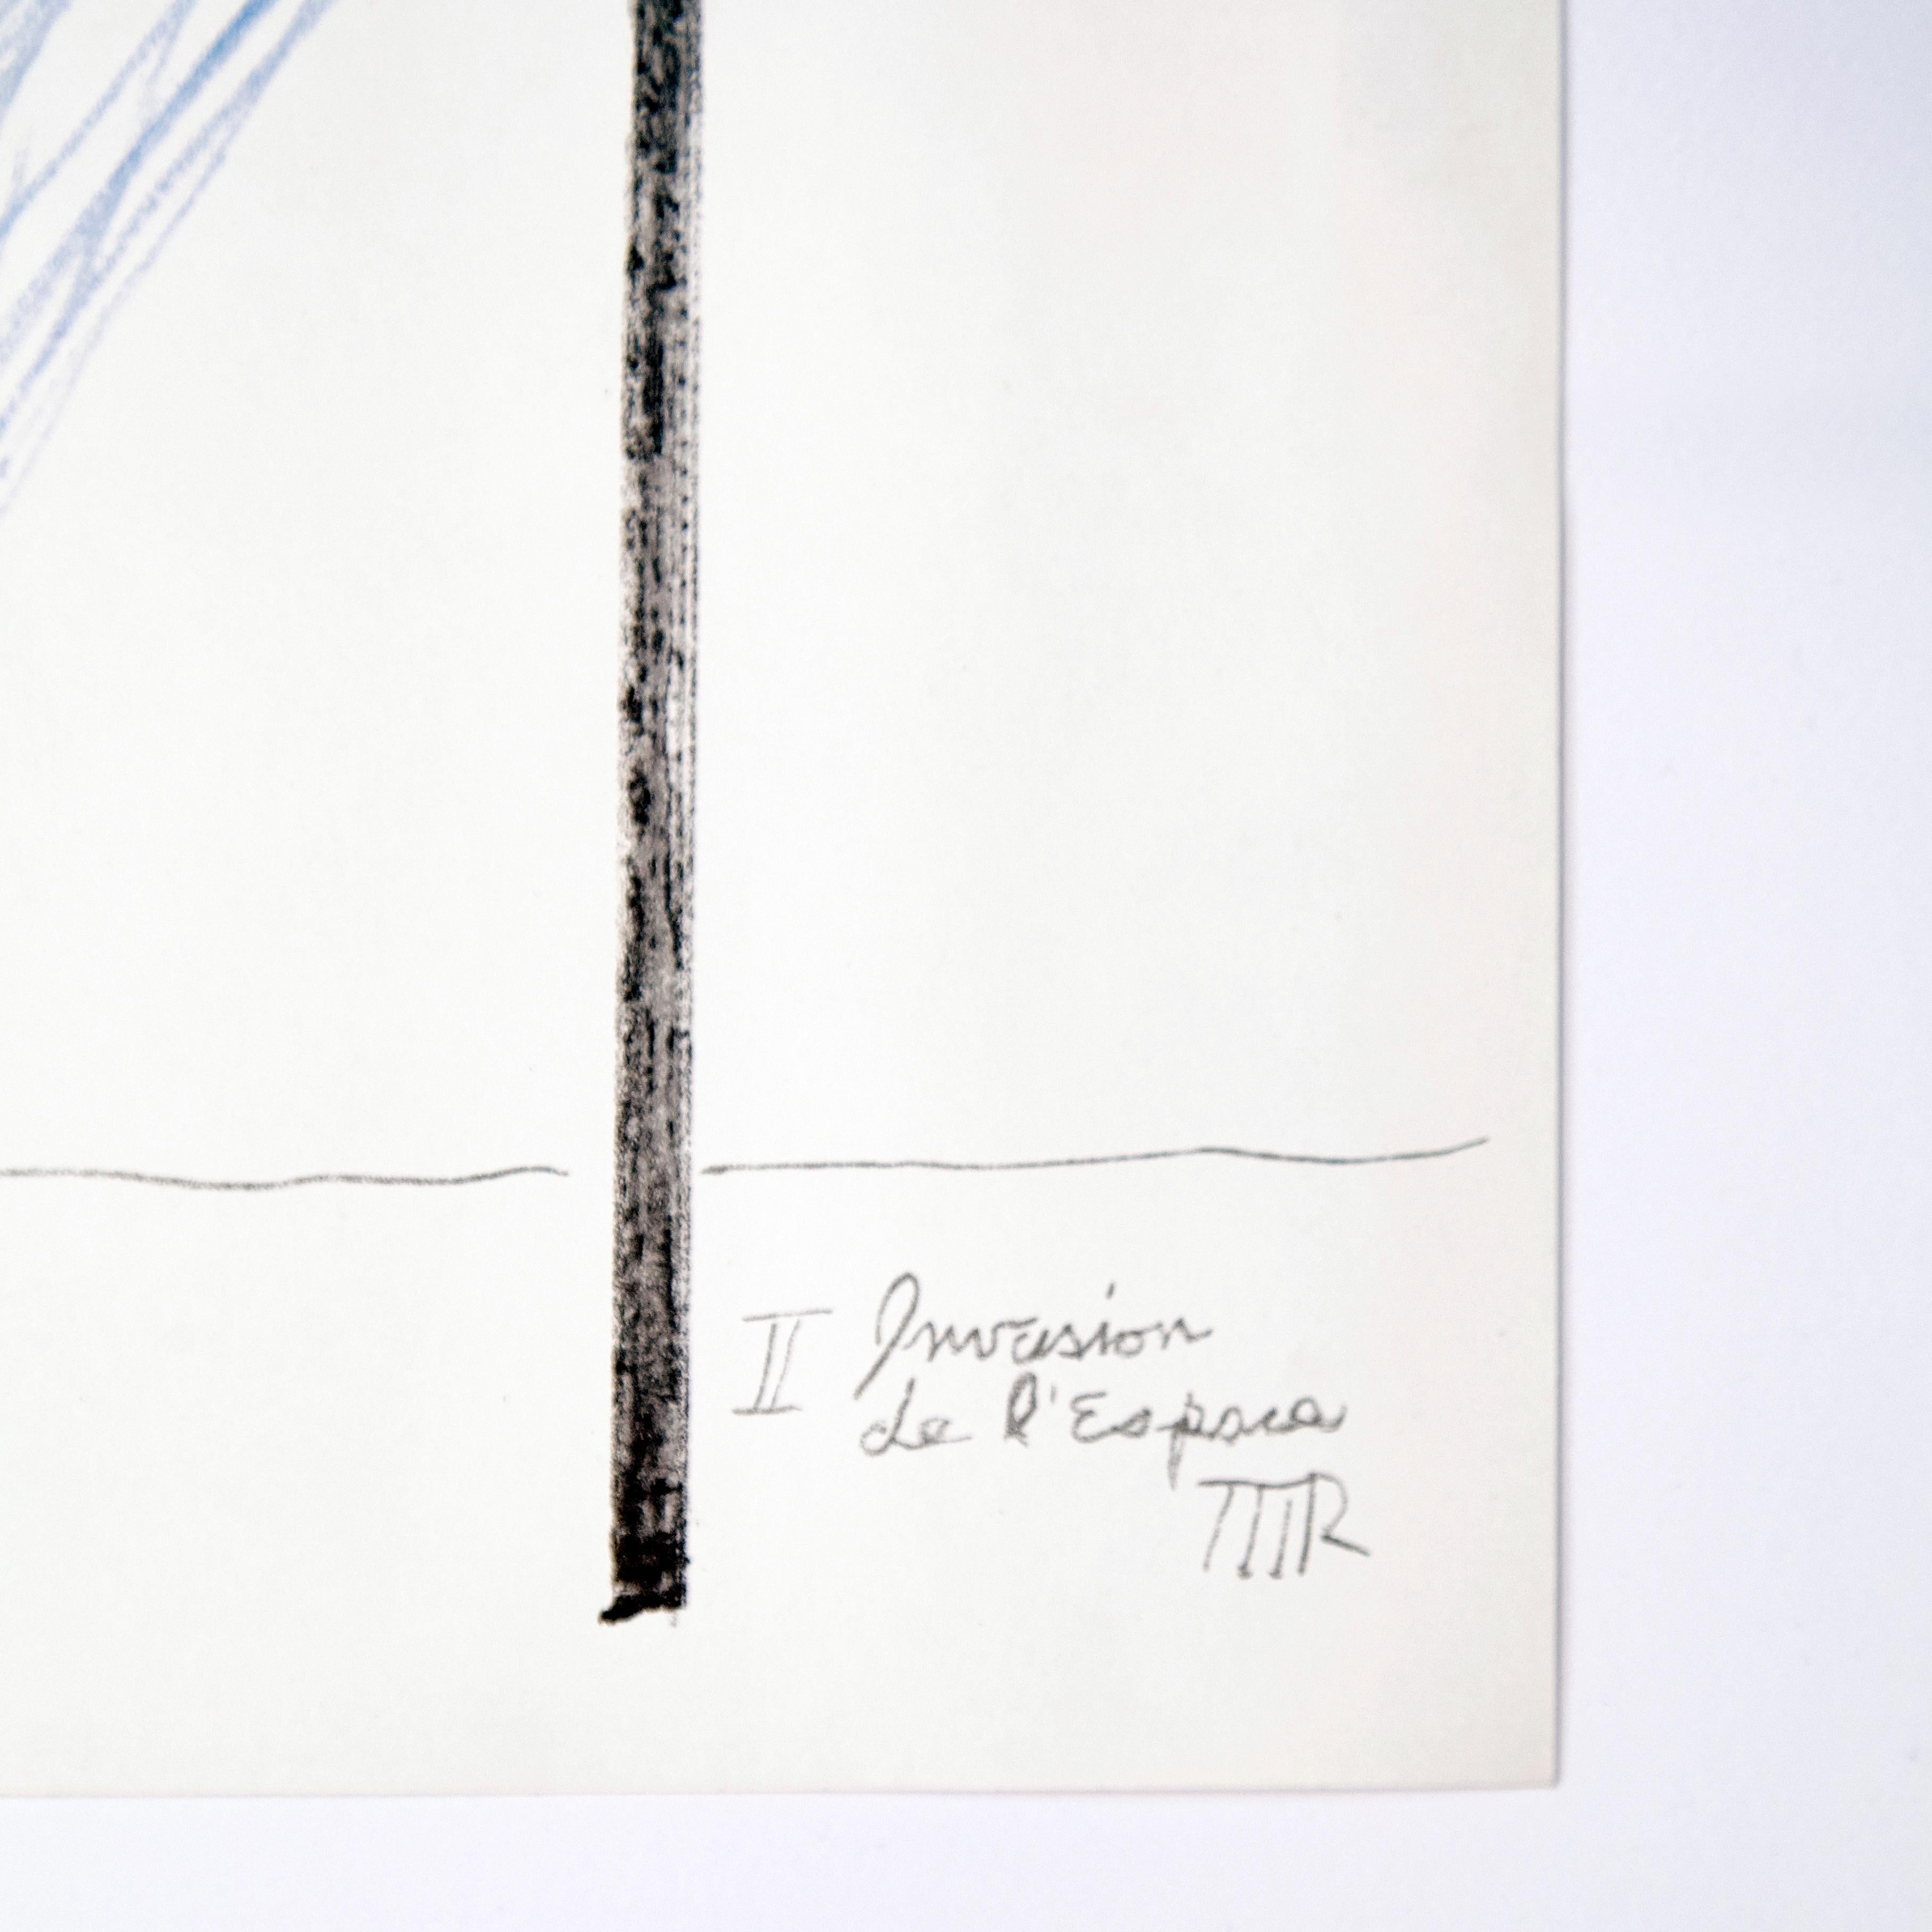 Lithographie de Man Ray, 1961.
Signé sur la pierre.

Man Ray (1890-1976) était un artiste visuel américain qui a passé la majeure partie de sa carrière en France. Il a apporté une contribution importante aux mouvements DADA et surréaliste, bien